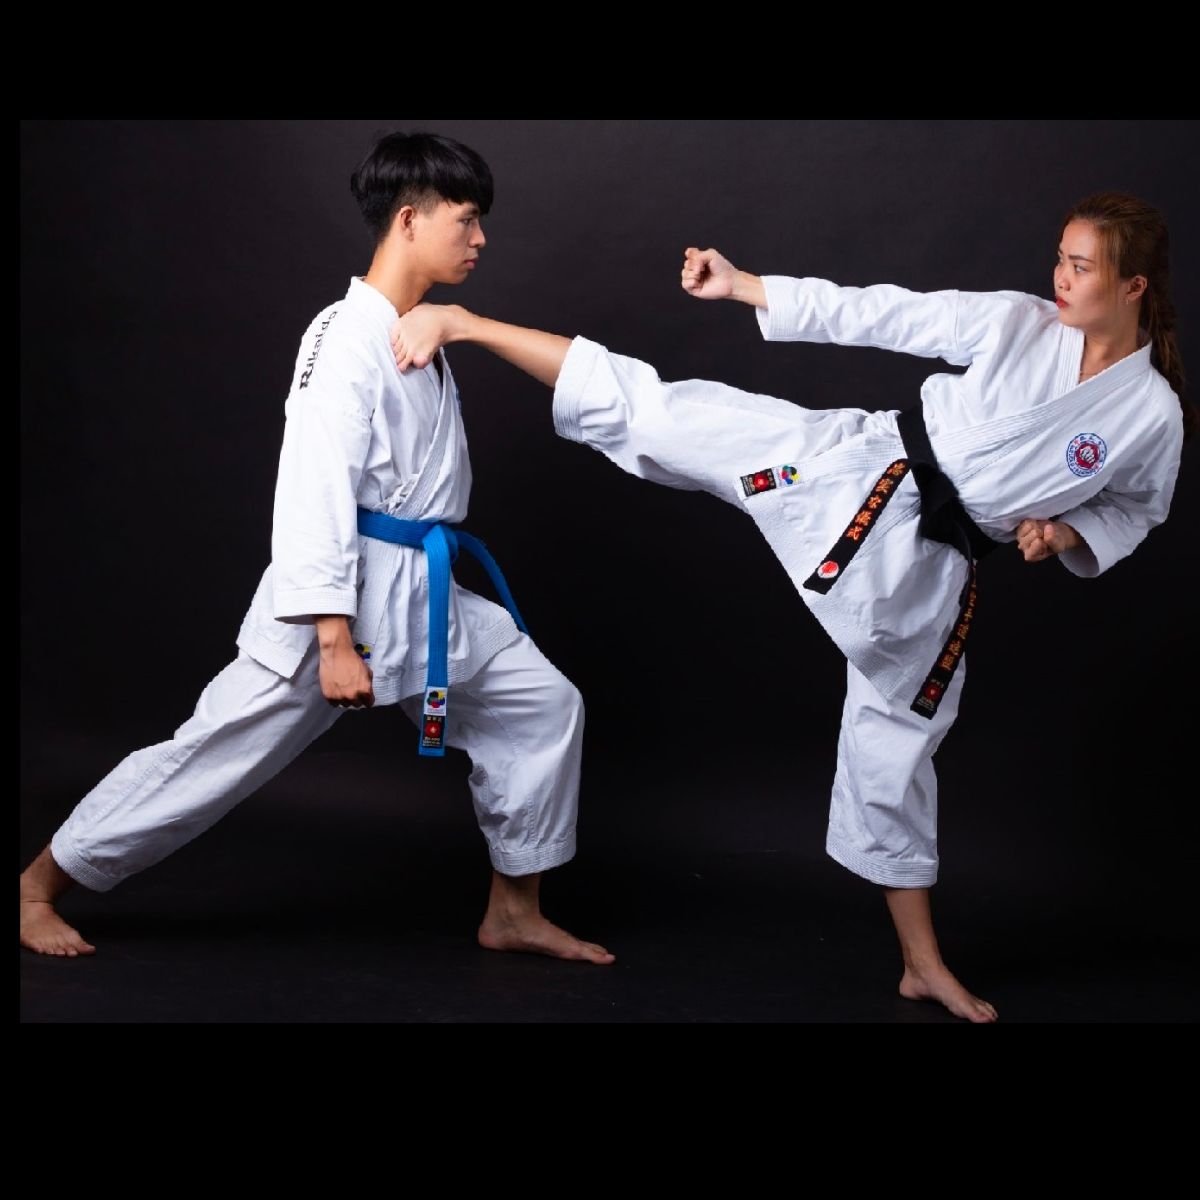 Võ phục có thể phụ thuộc vào môn karate cụ thể và quy định của từng tổ chức võ đạo